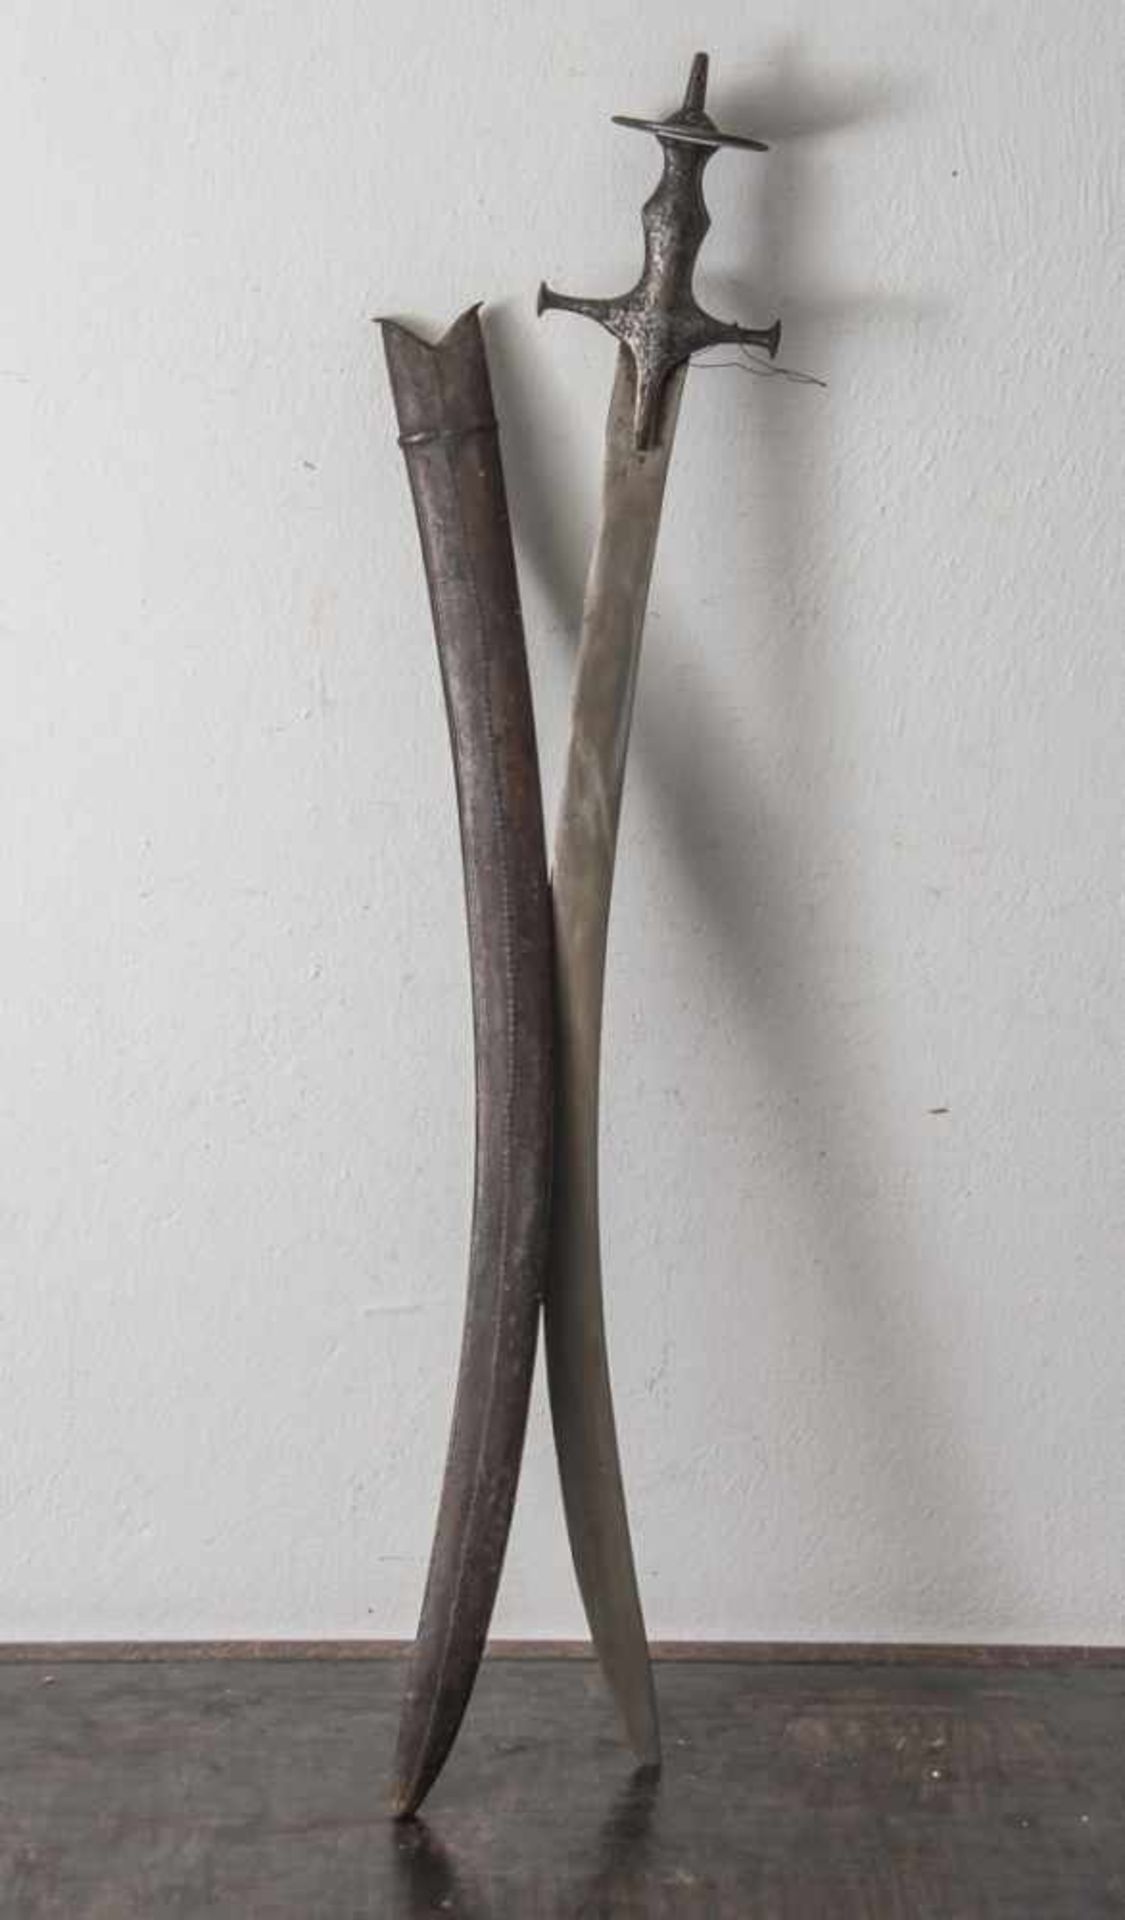 Tulwar, Indischer Säbel, 19. Jahrhundert, lederbezogene Holzscheide, lange, gebogene, einseitig